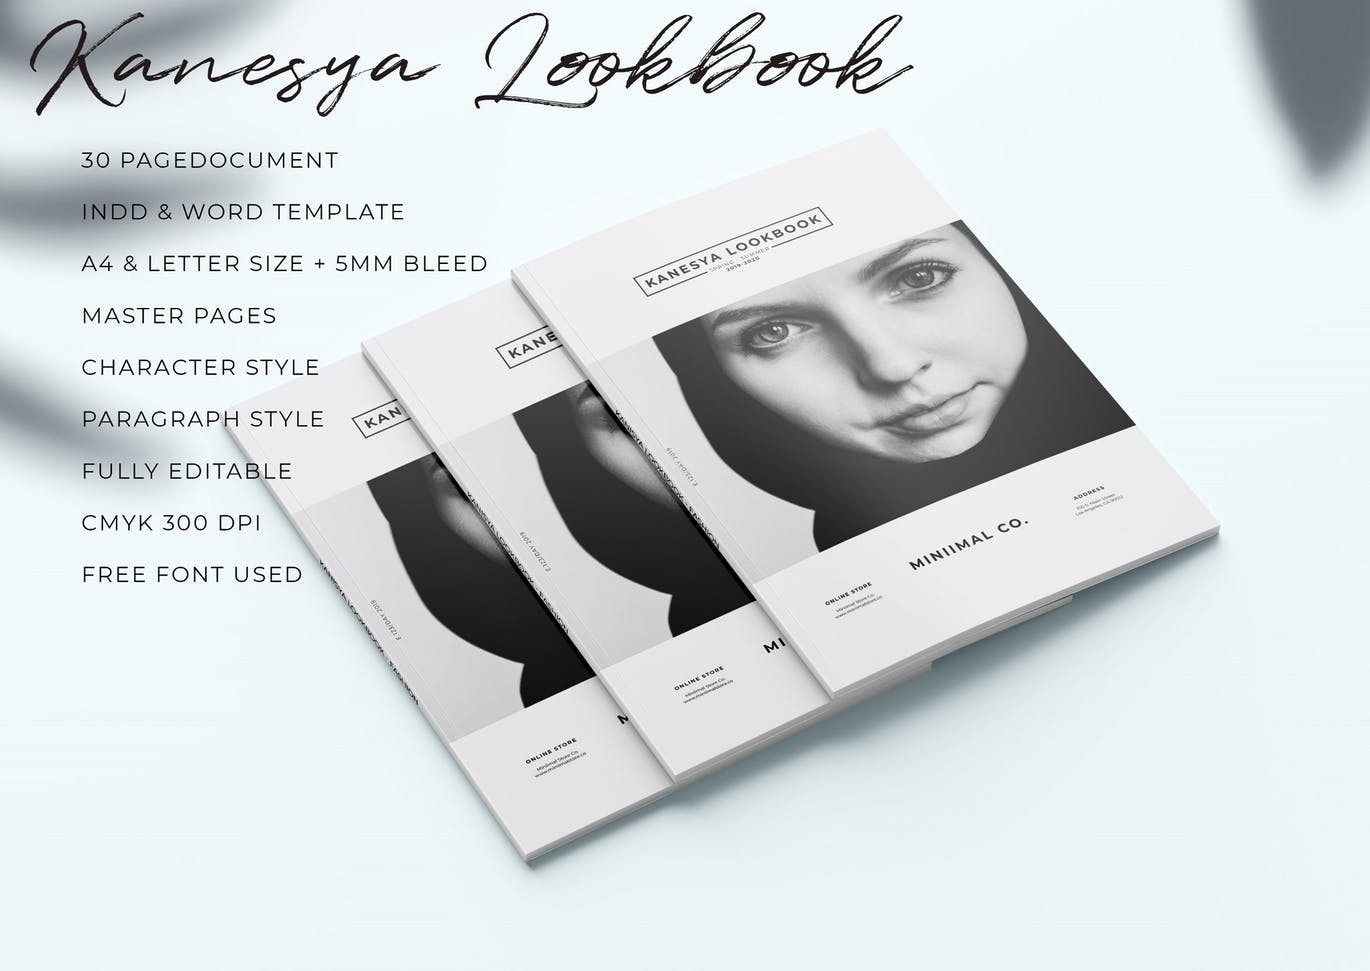 时尚/摄影/食品/生活方式/建筑主题使用手册画册设计模板 Lookbook插图(1)